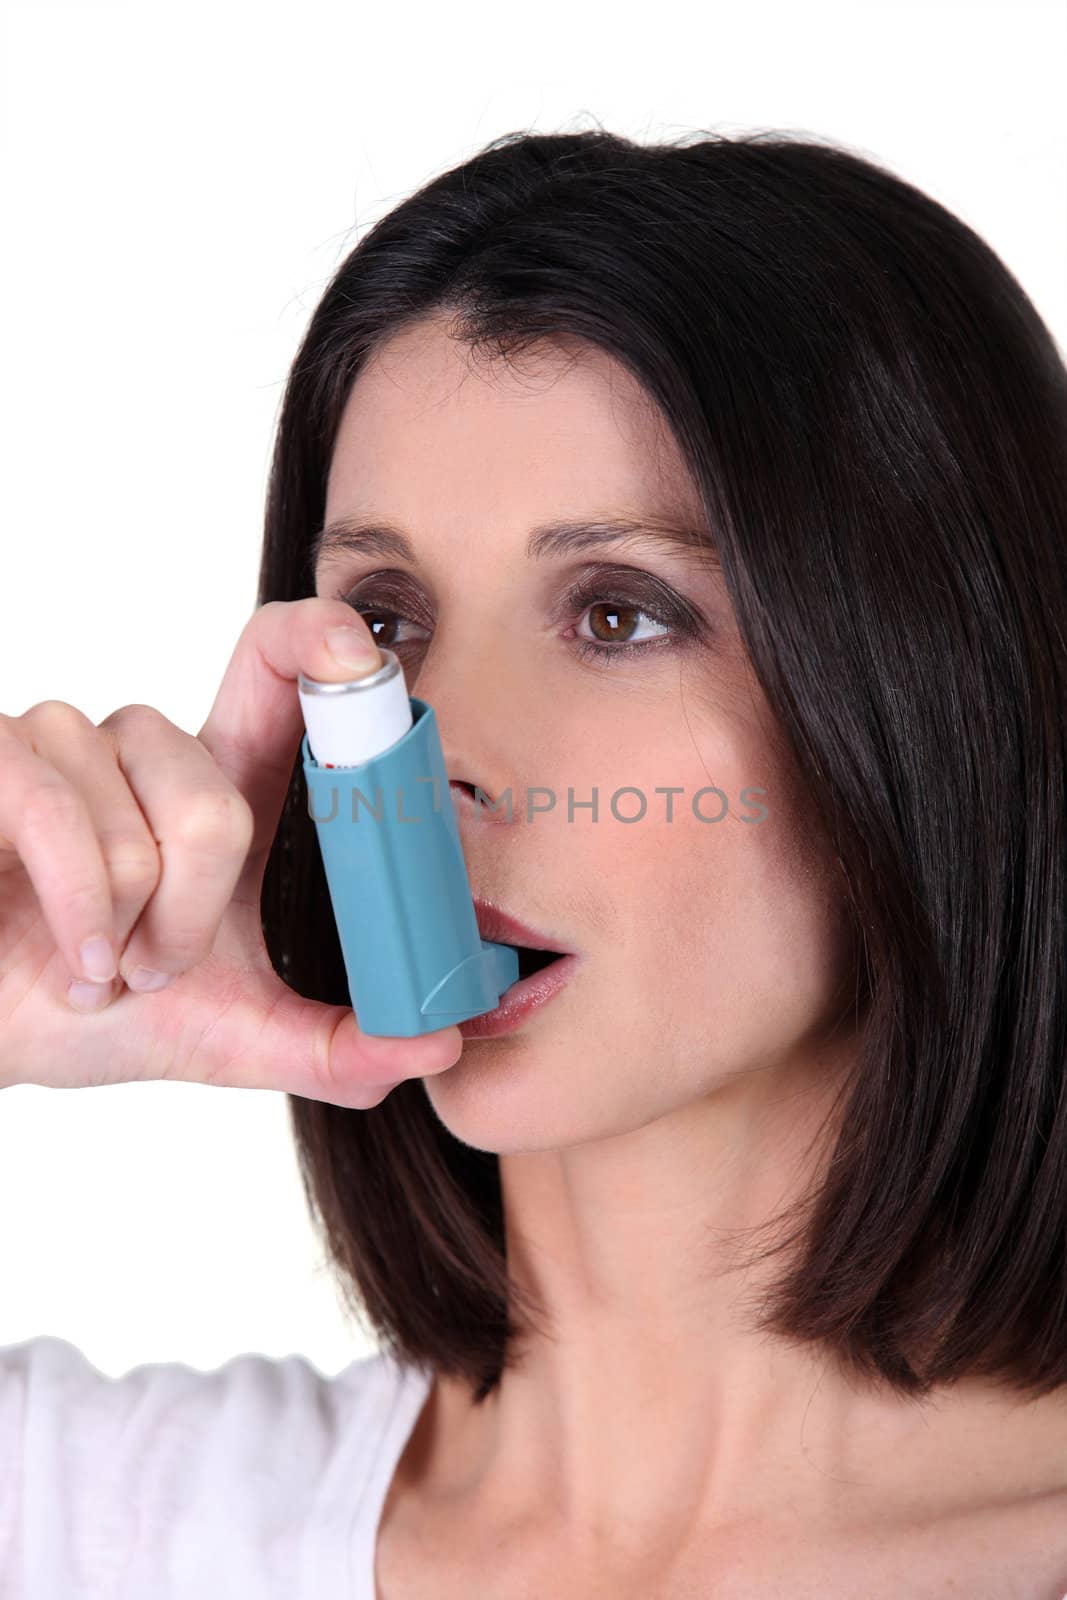 Woman with an inhaler